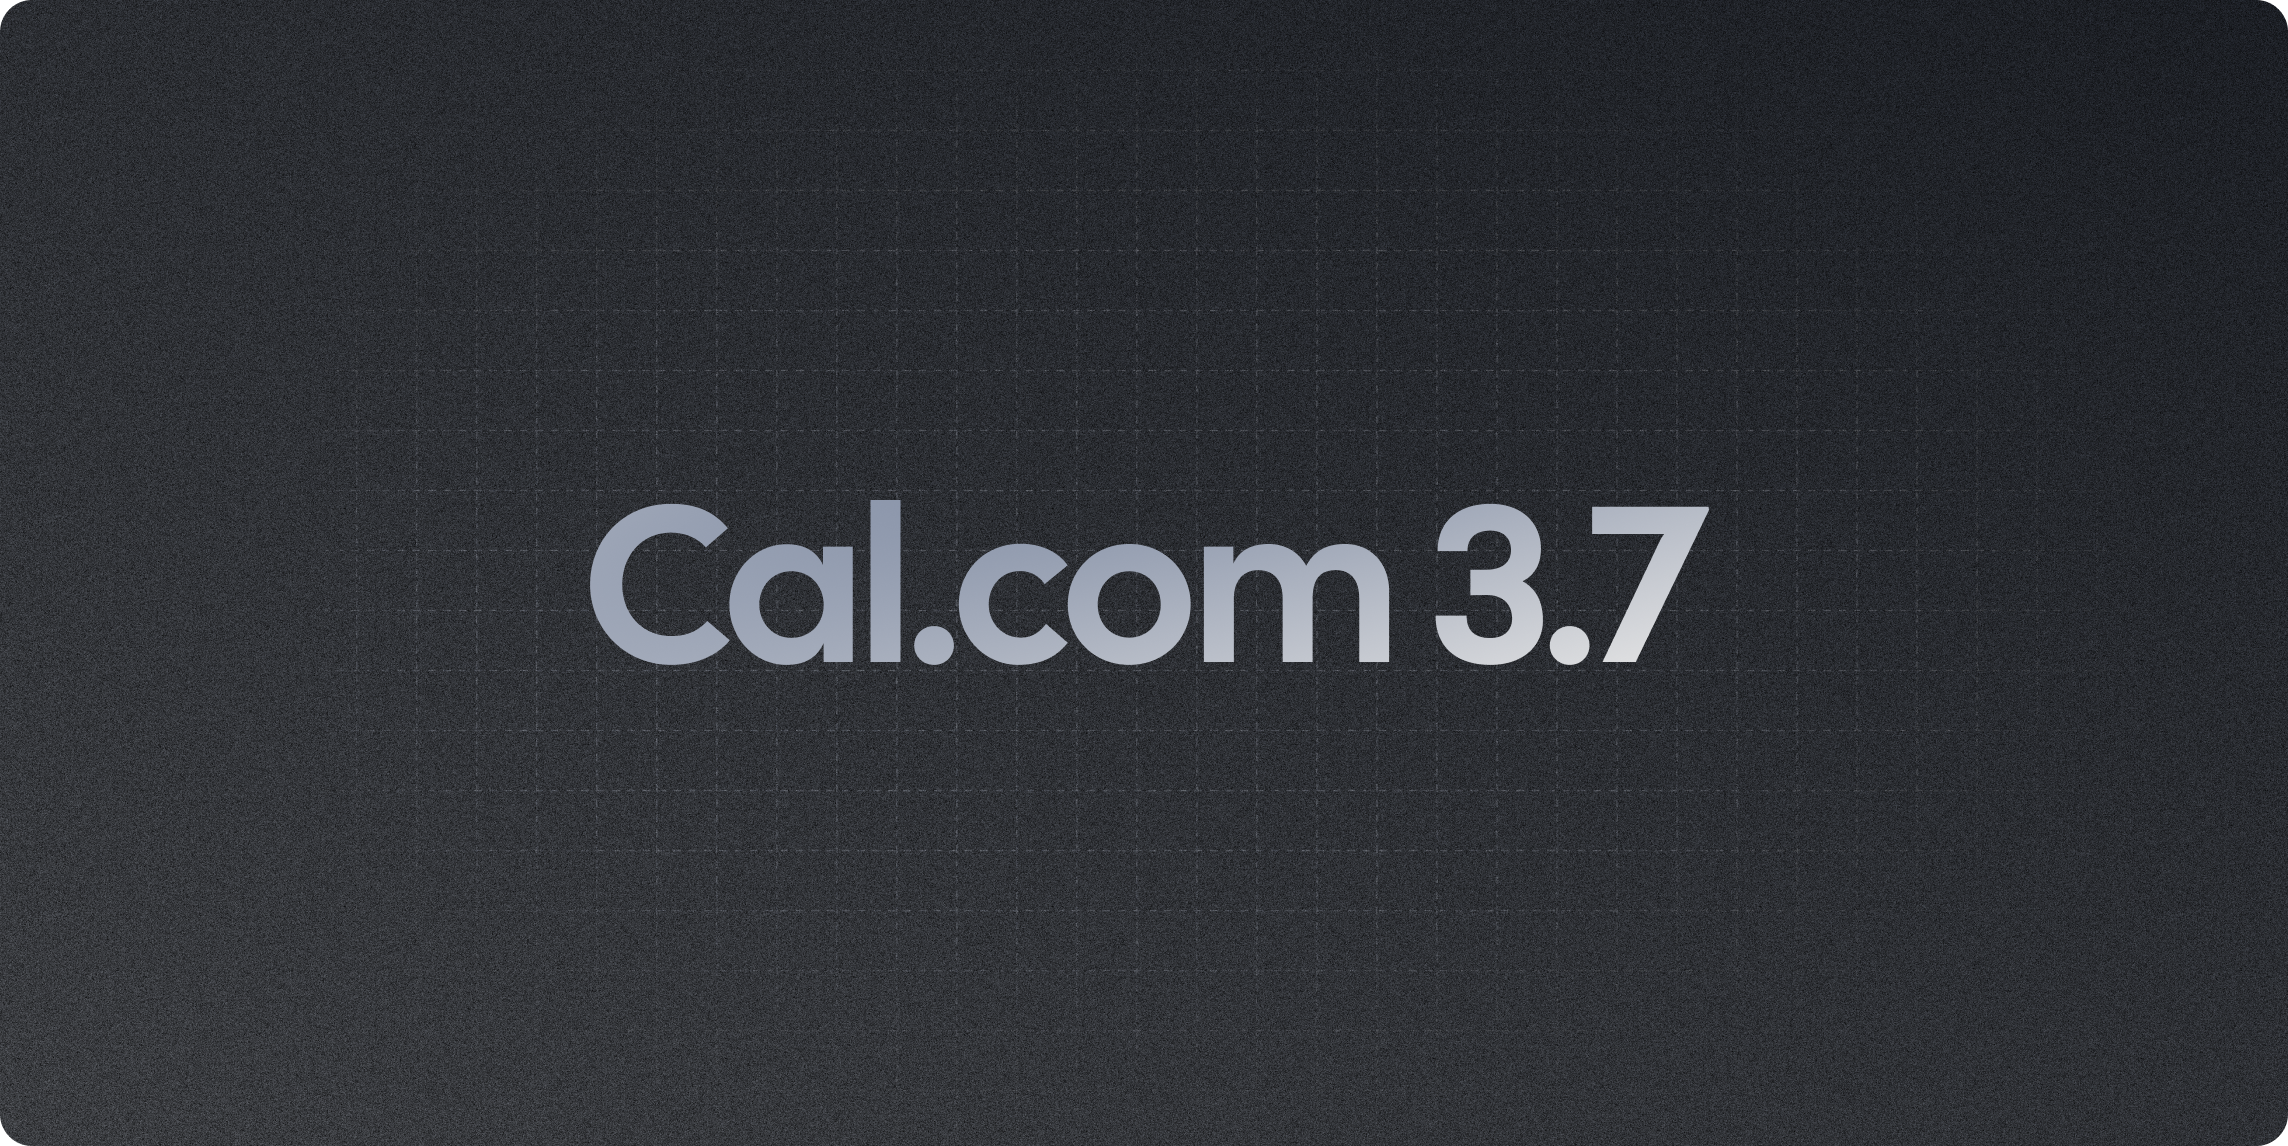 Cal.com v3.7